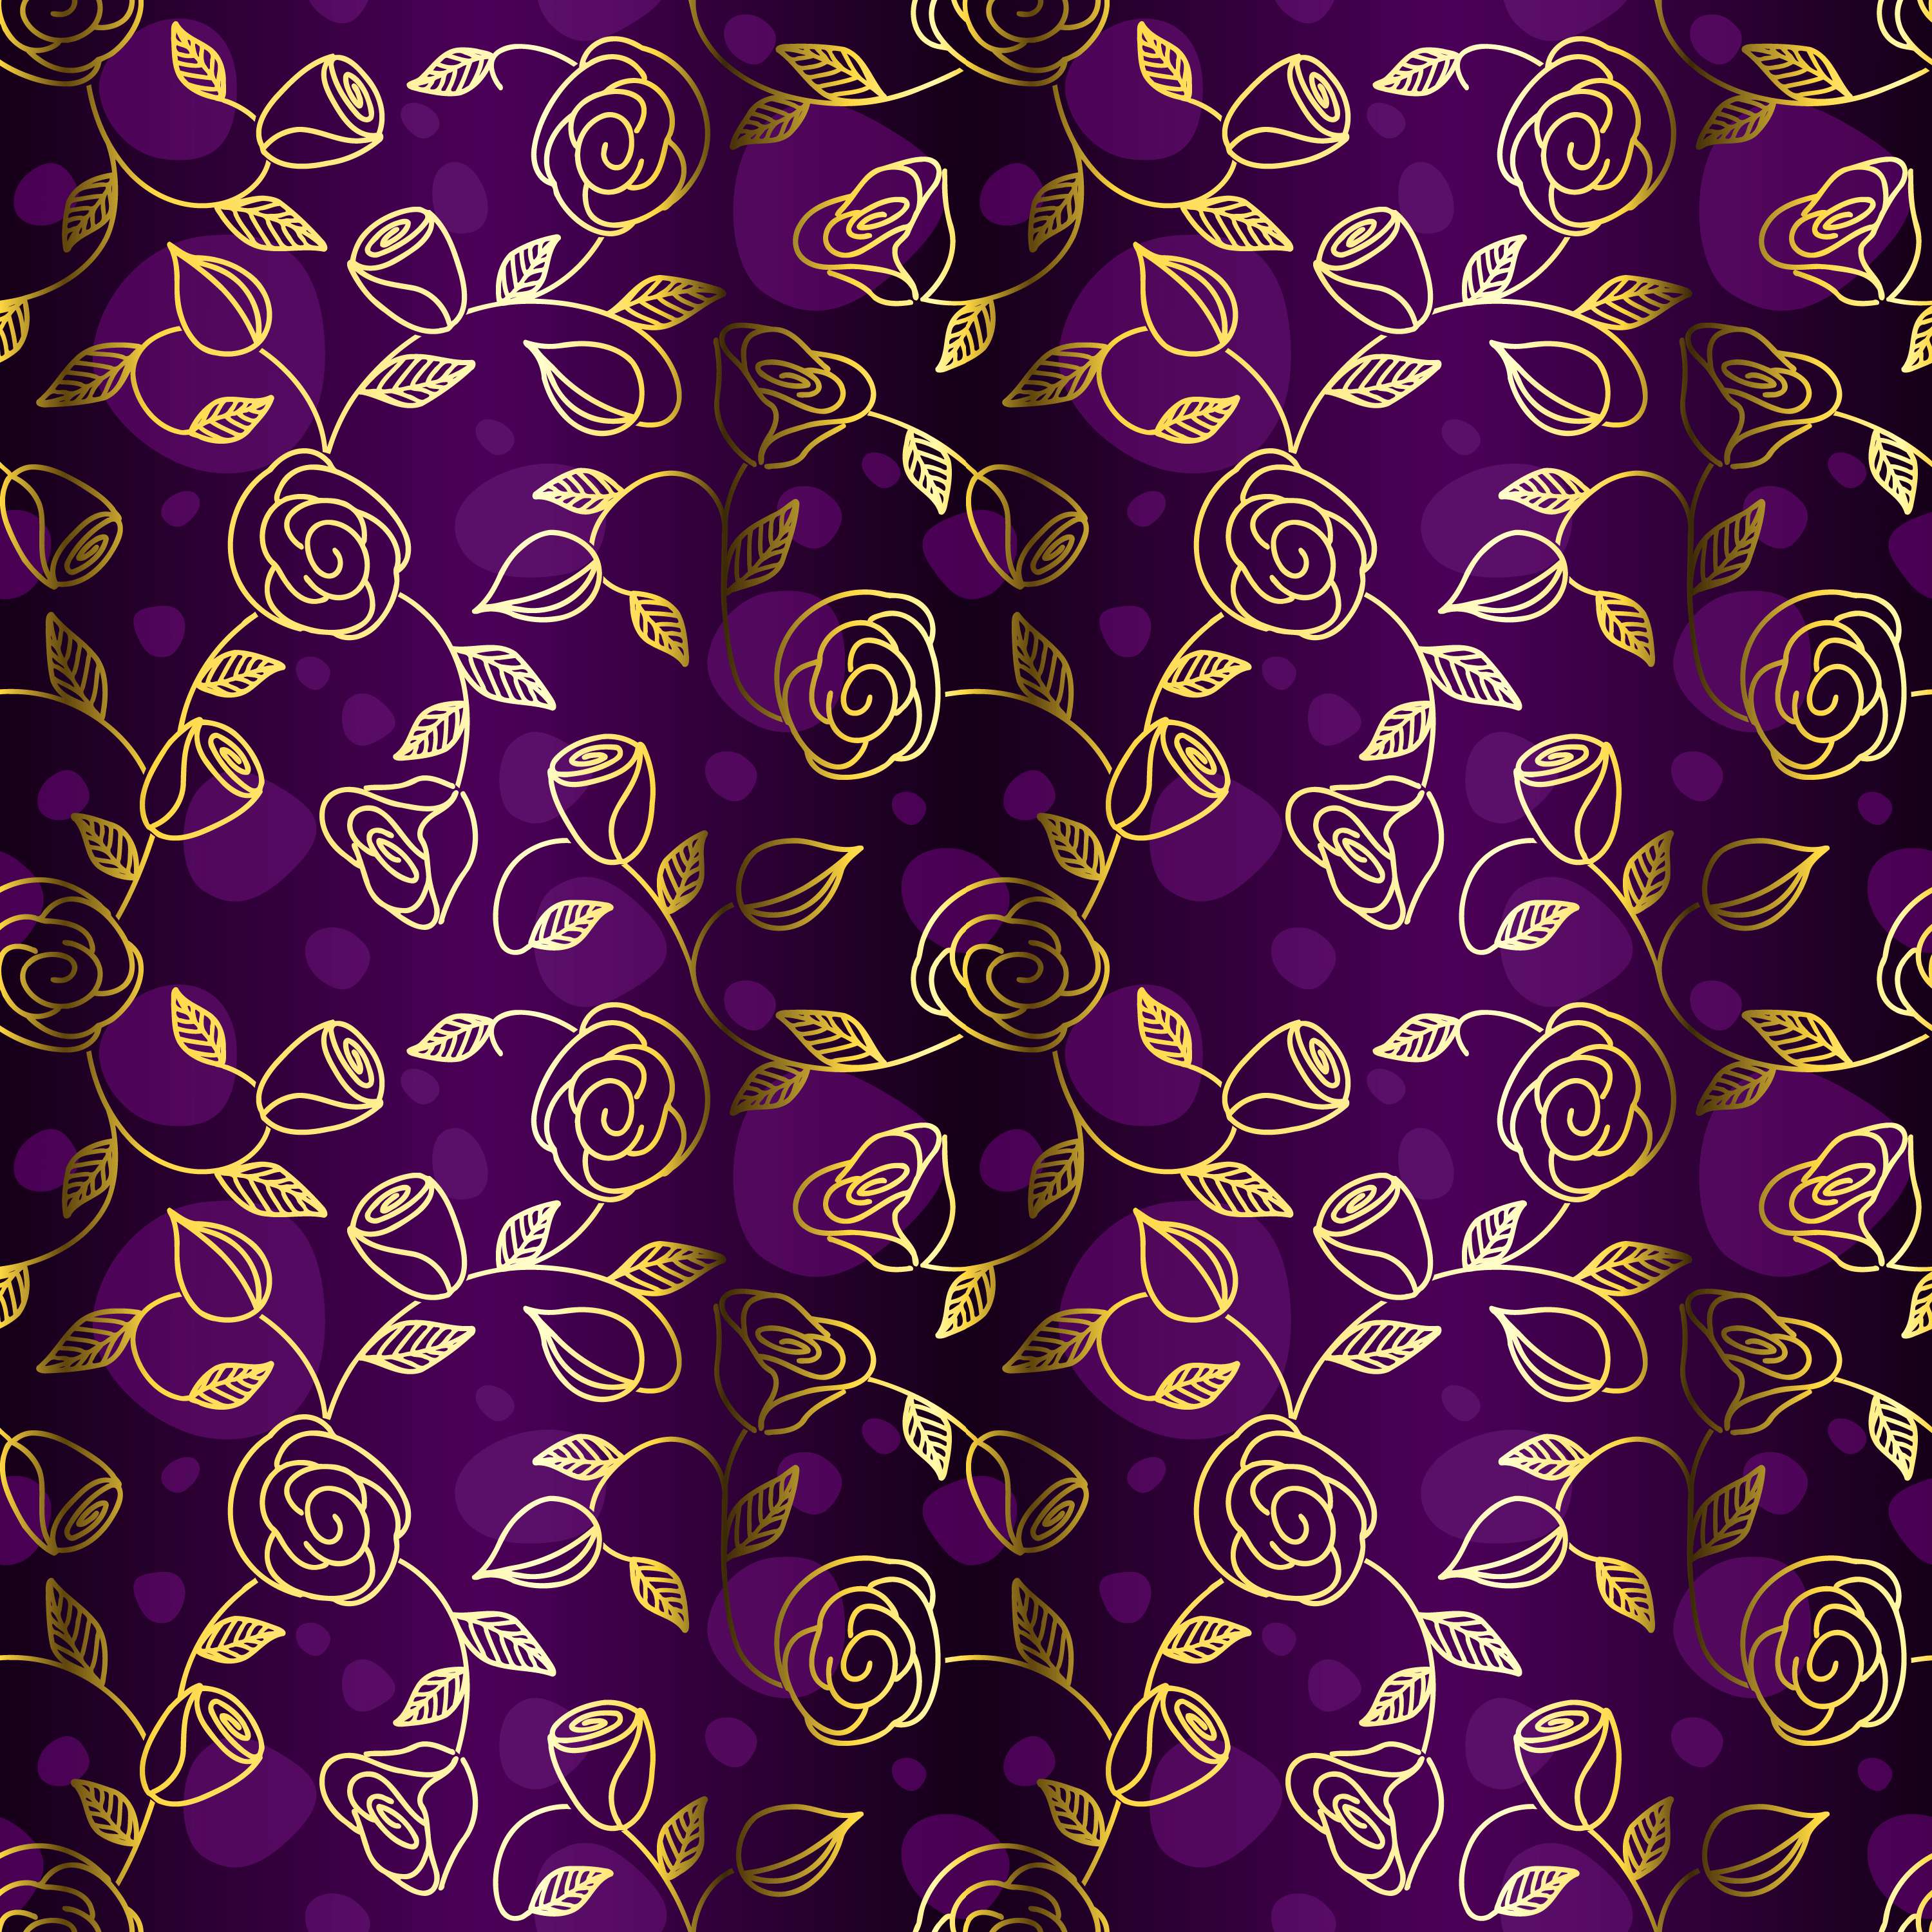 壁紙 背景イラスト 花の模様 柄 パターン No 148 バラ 紫 ゴールドライン